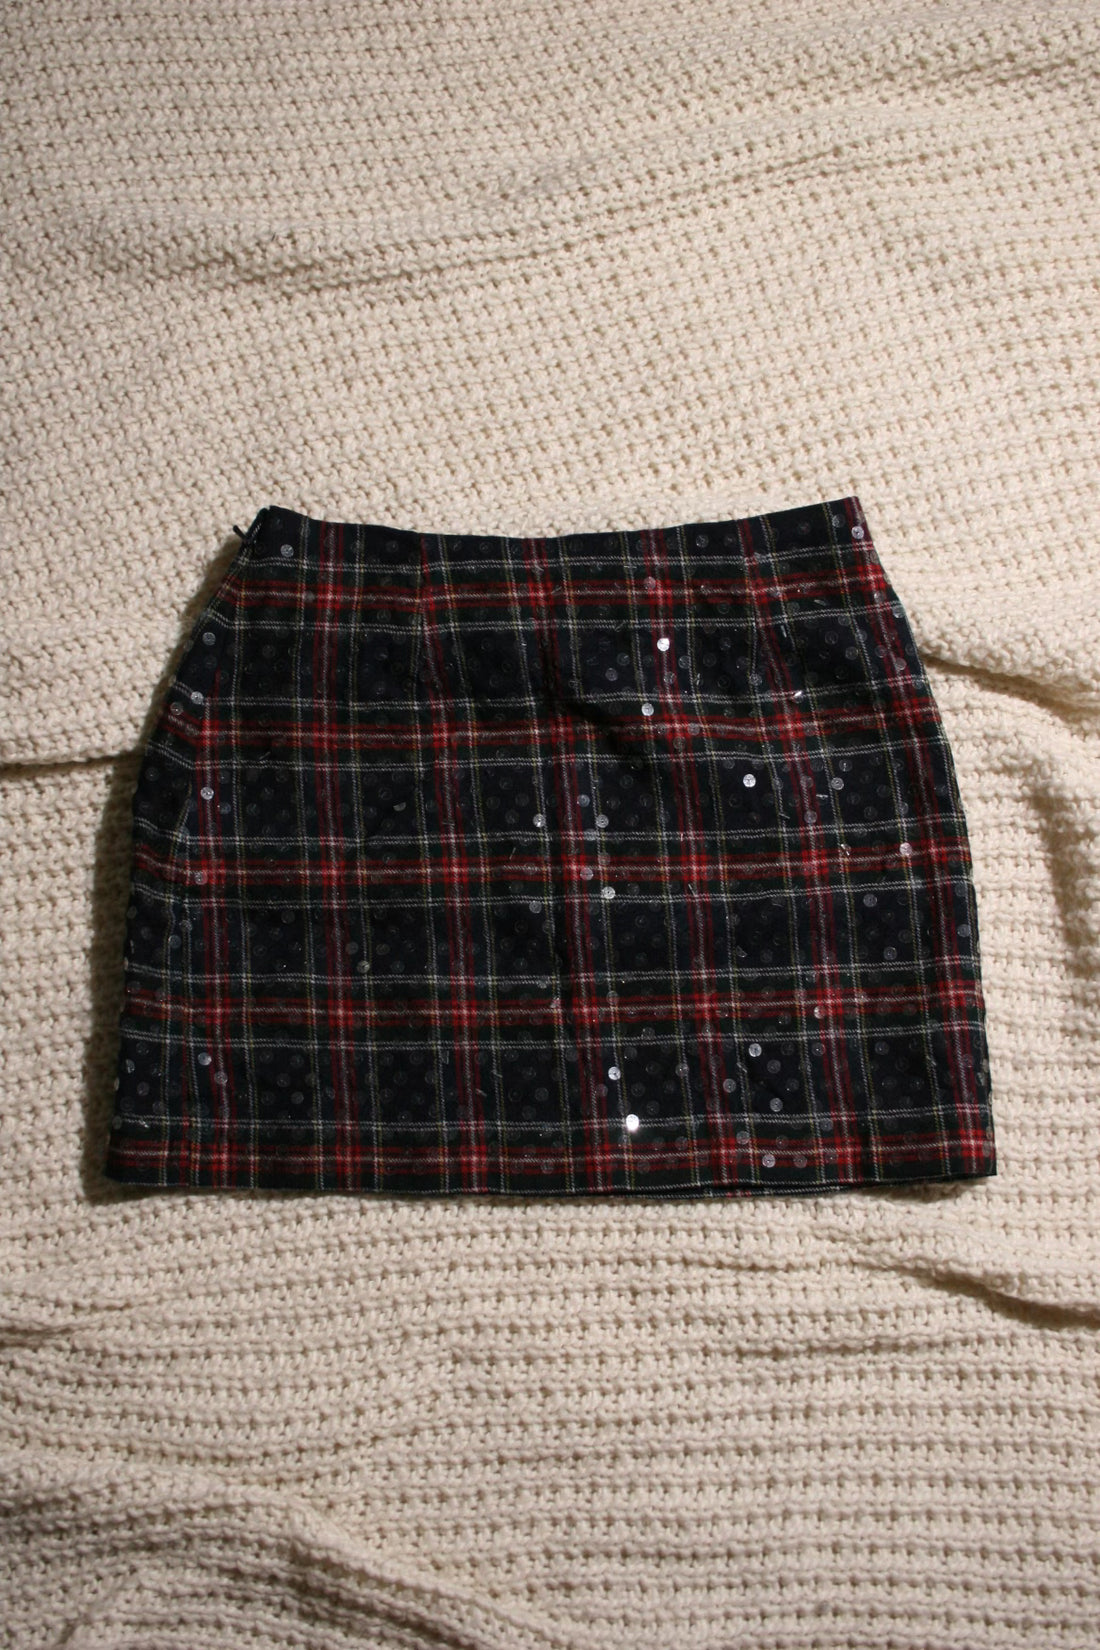 Express - Plaid Sequin Skirt (2)